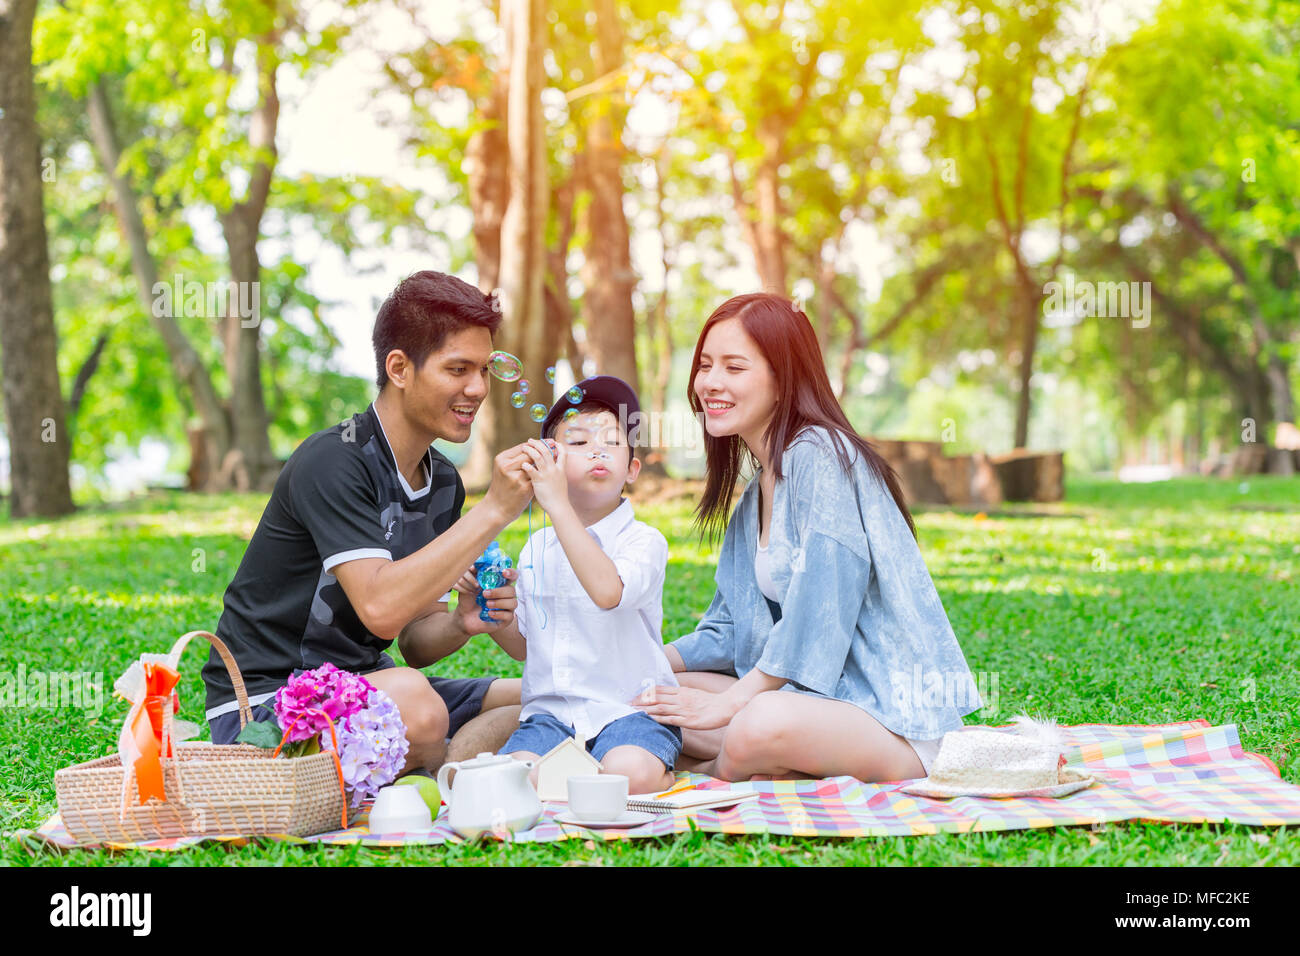 La familia una adolescente asiática kid felices vacaciones momento de picnic en el parque Foto de stock